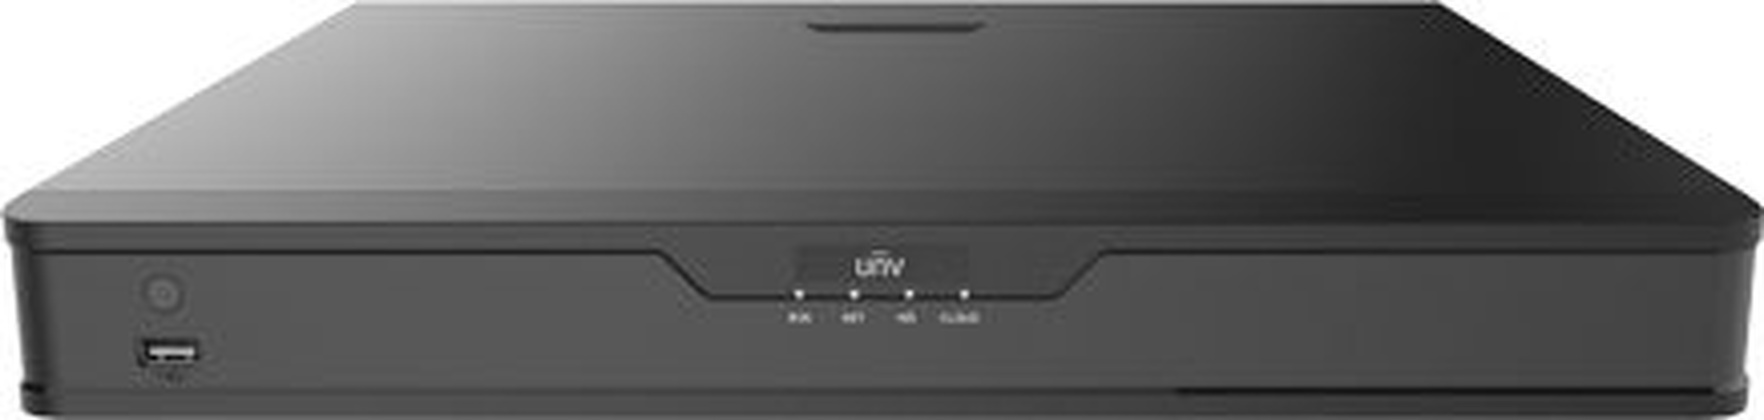 Видеорегистратор 16-канальный "Uniview" [NVR302-16S], 2xHDD, HDMI/VGA, RJ45